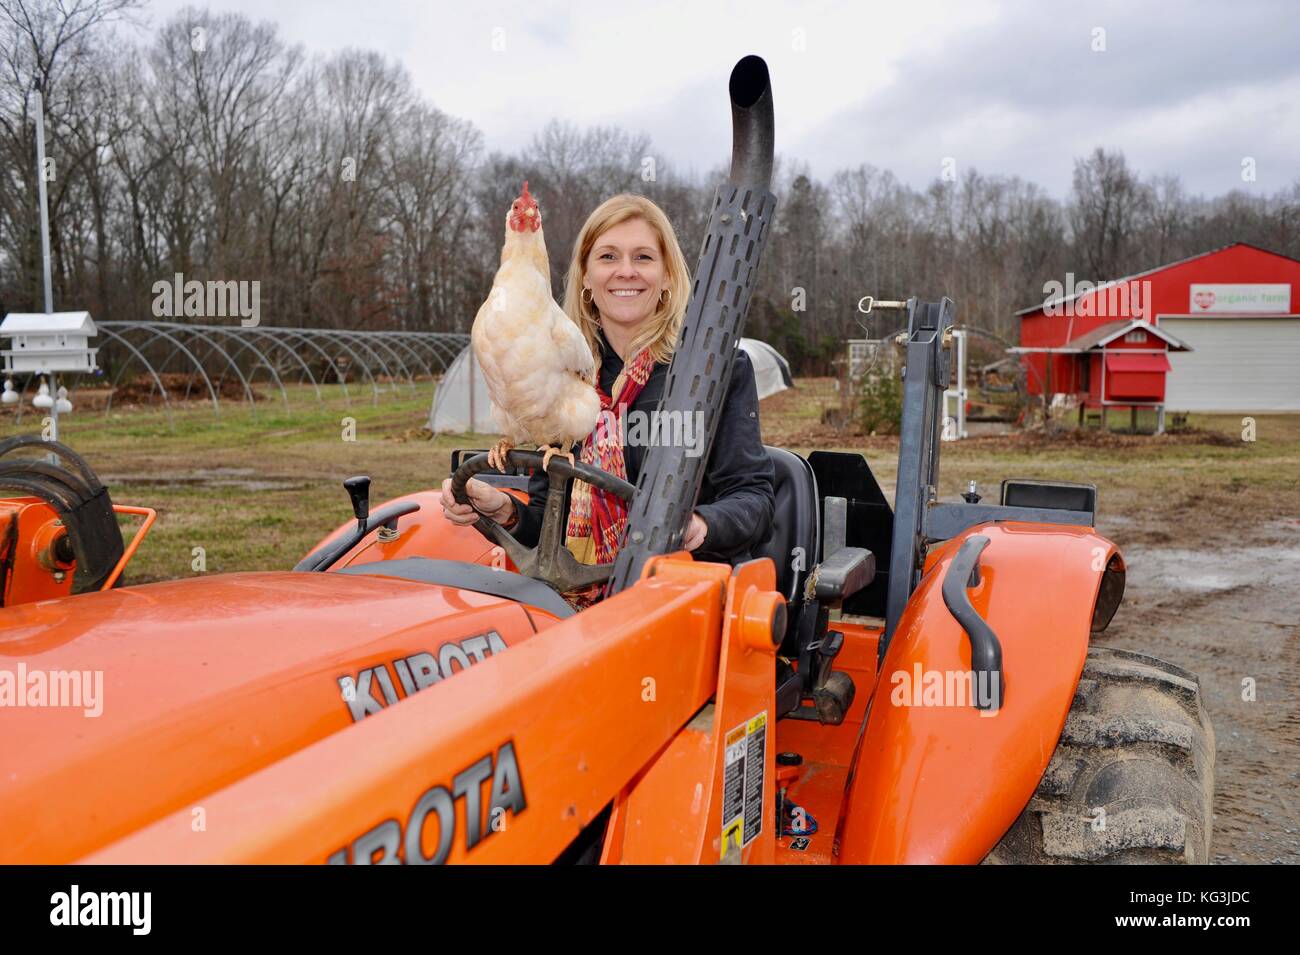 Fermière sur le tracteur avec le poulet à wise acres ferme biologique, un u-pick fraise exploitation agricole à Indian Trail, North Carolina, USA Banque D'Images